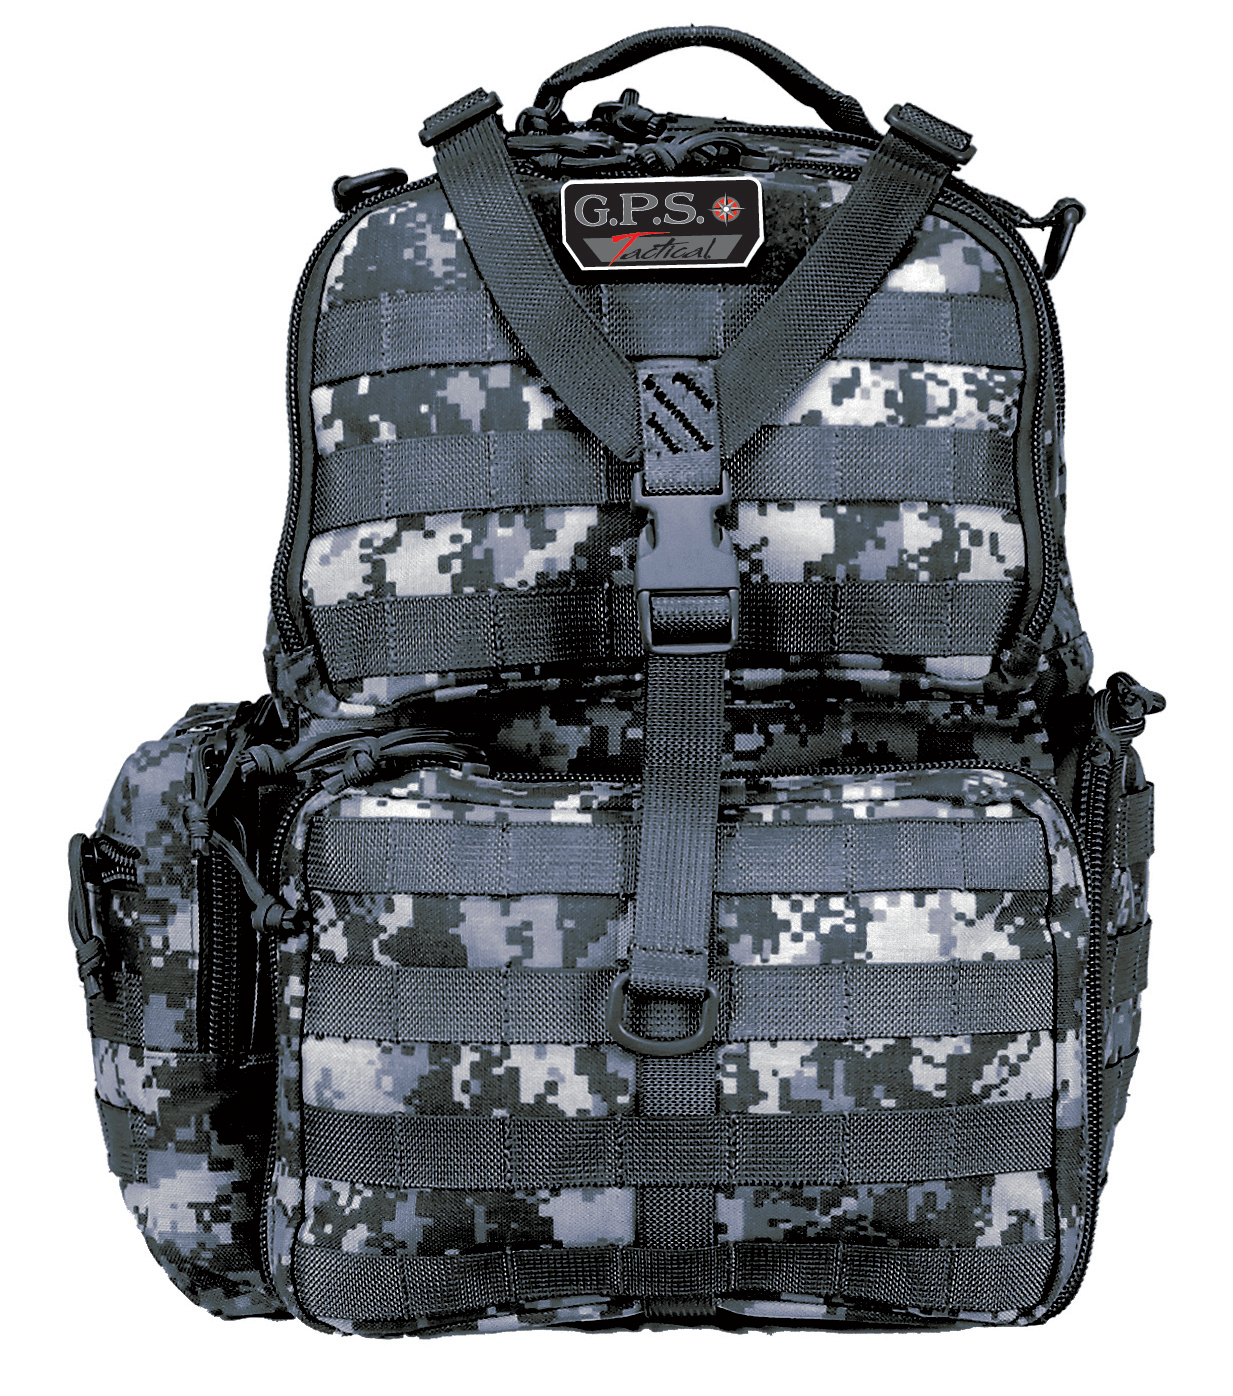 GPS Gps Tac Range Backpack Gray Dgtl Soft Gun Cases